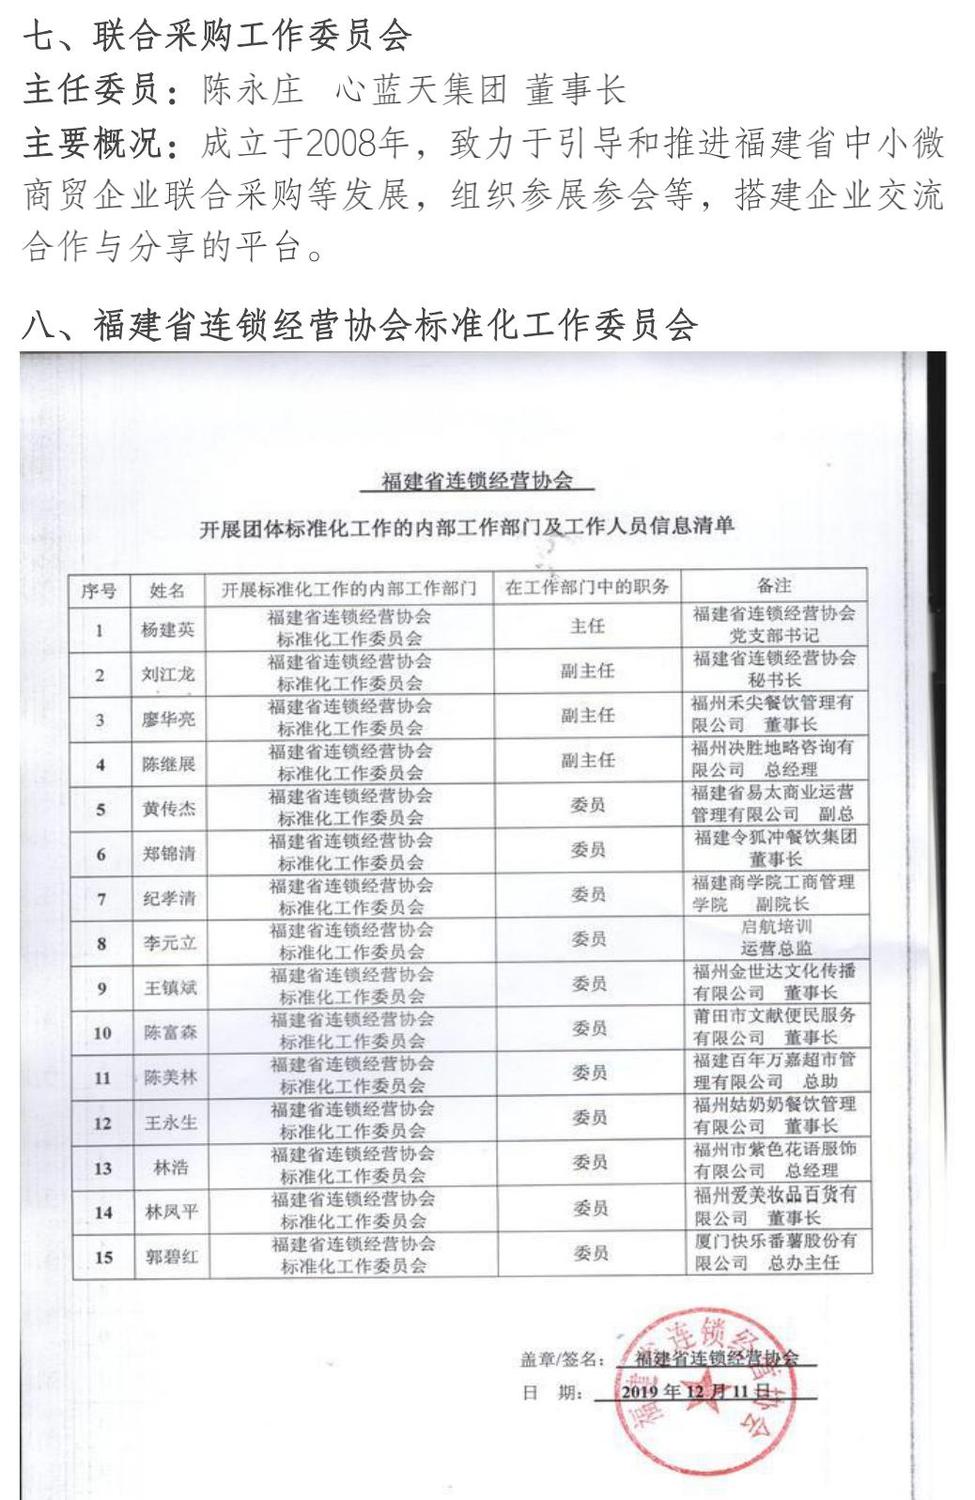 5福建连锁第六届会长理事等名单_05.jpg